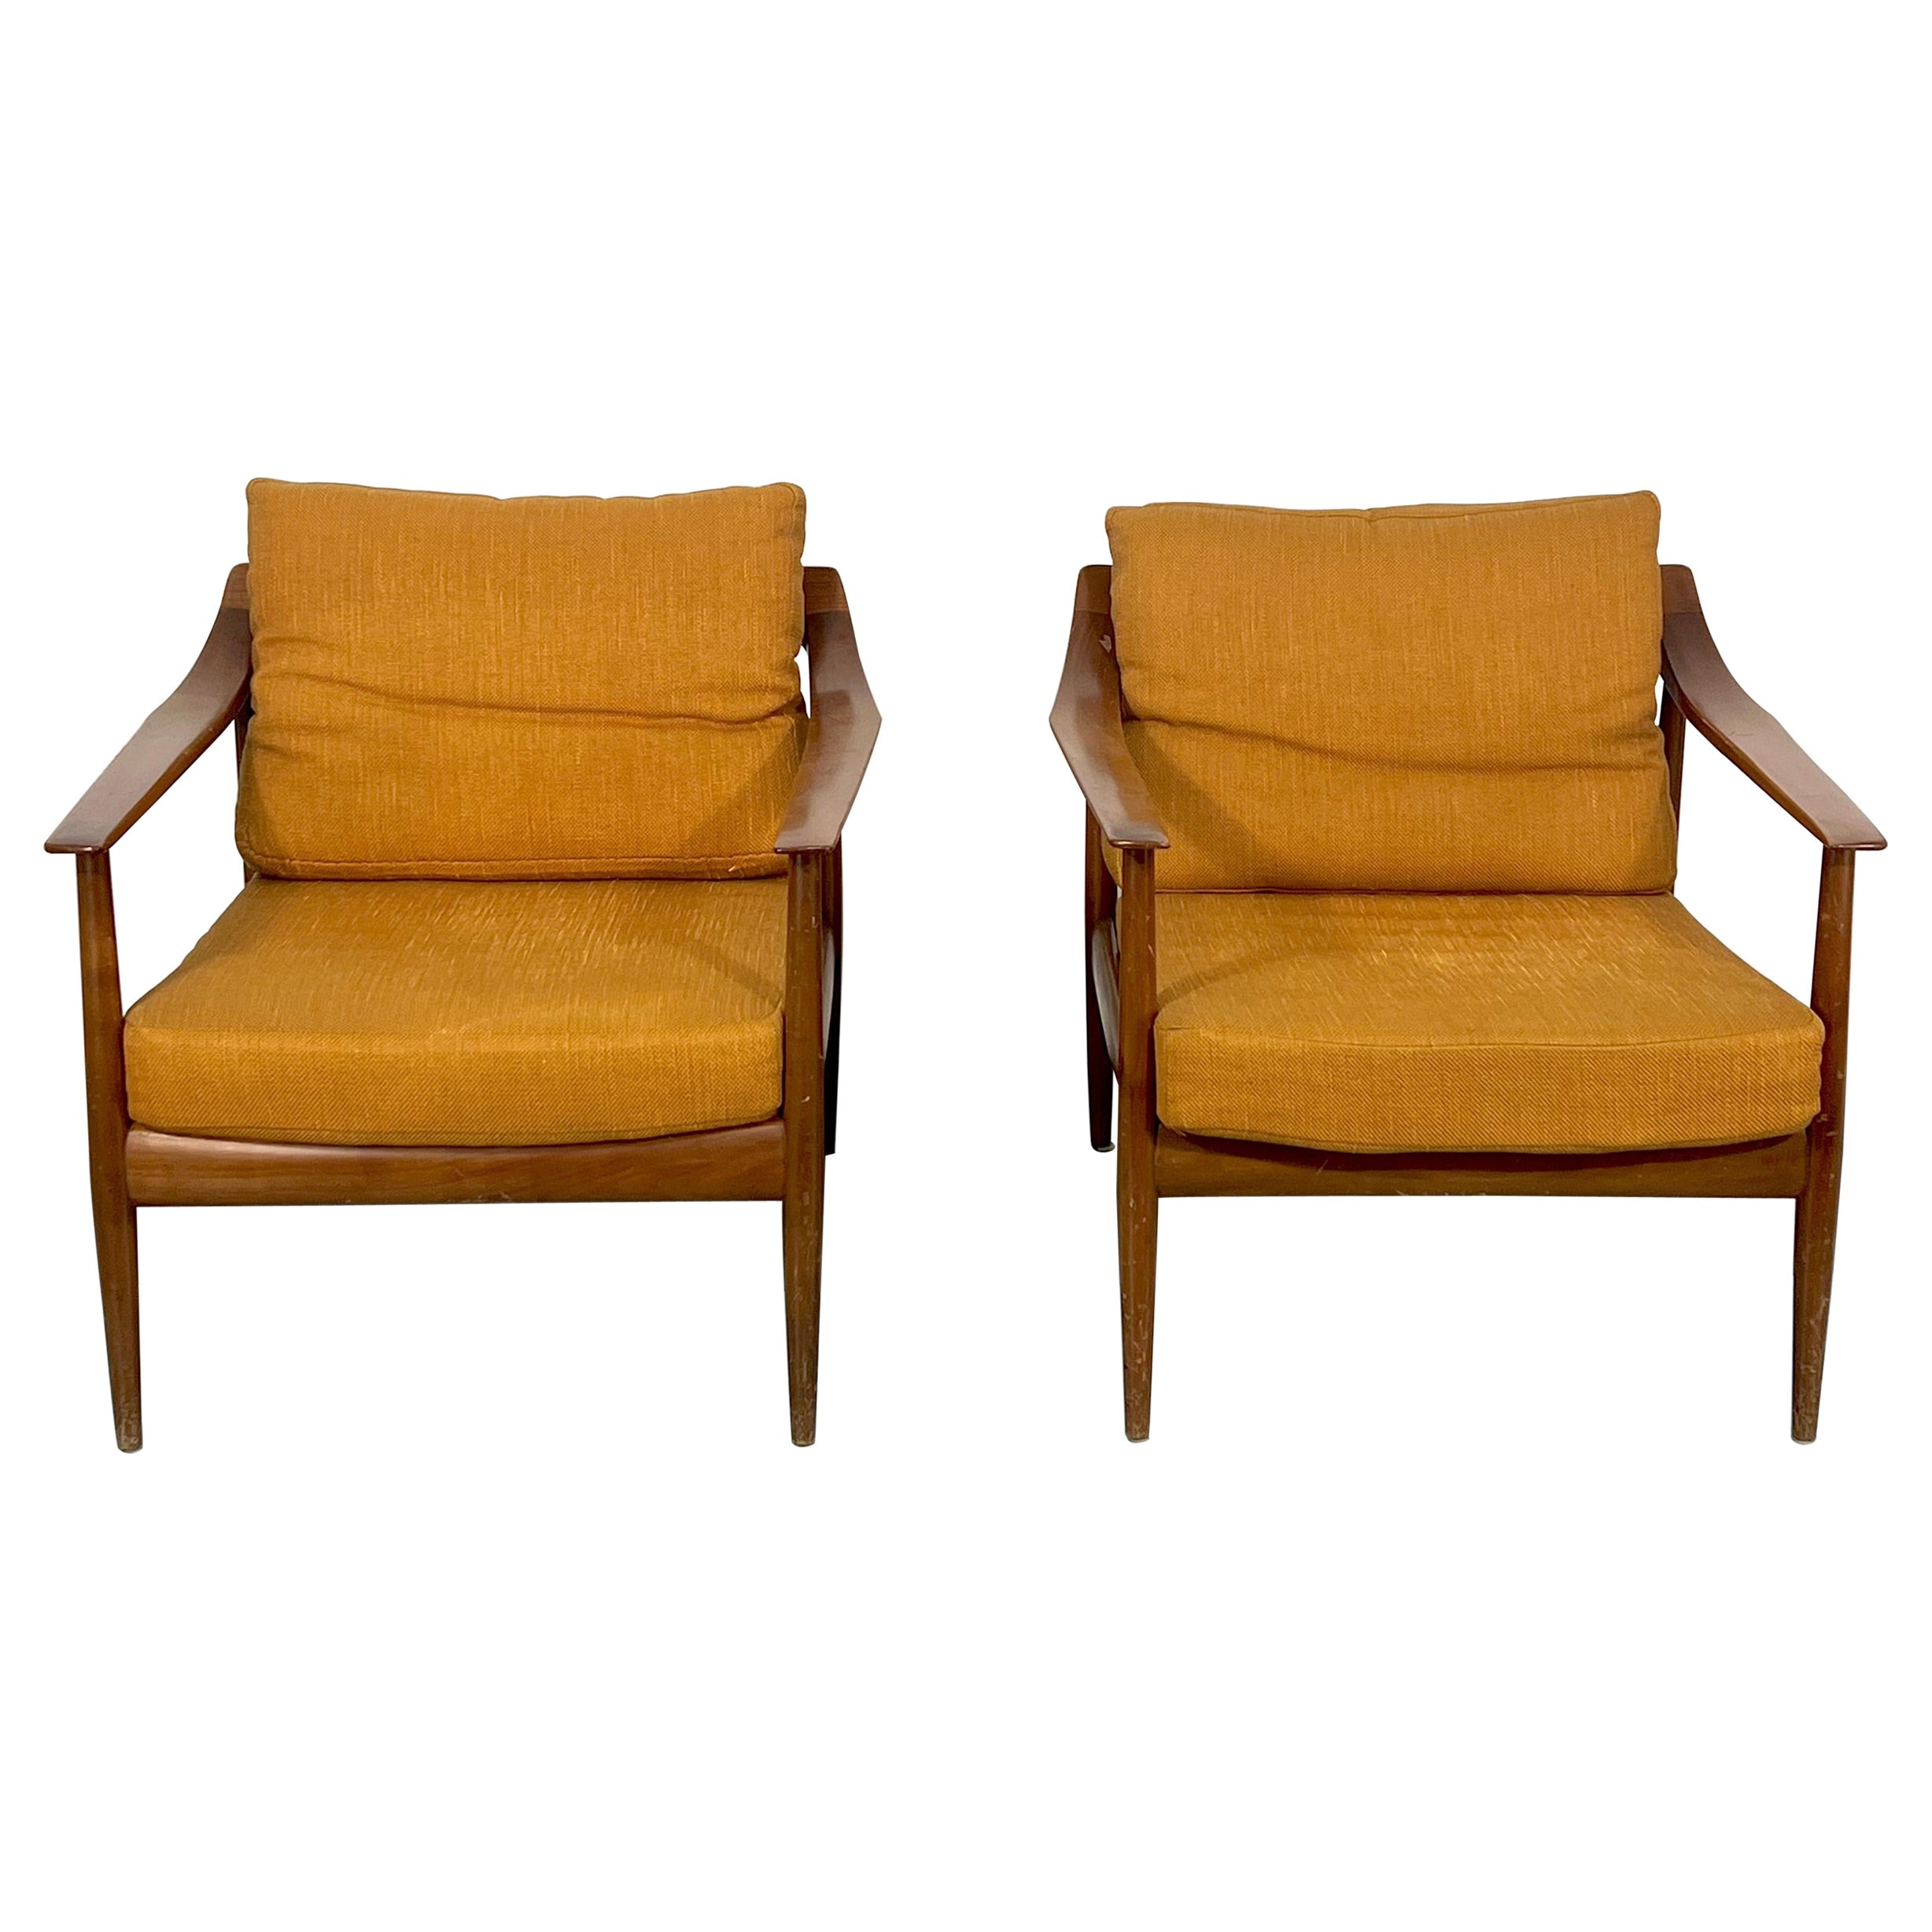 Paire de fauteuils Walter Knoll modernes du milieu du siècle dernier, modèle 550 des années 50